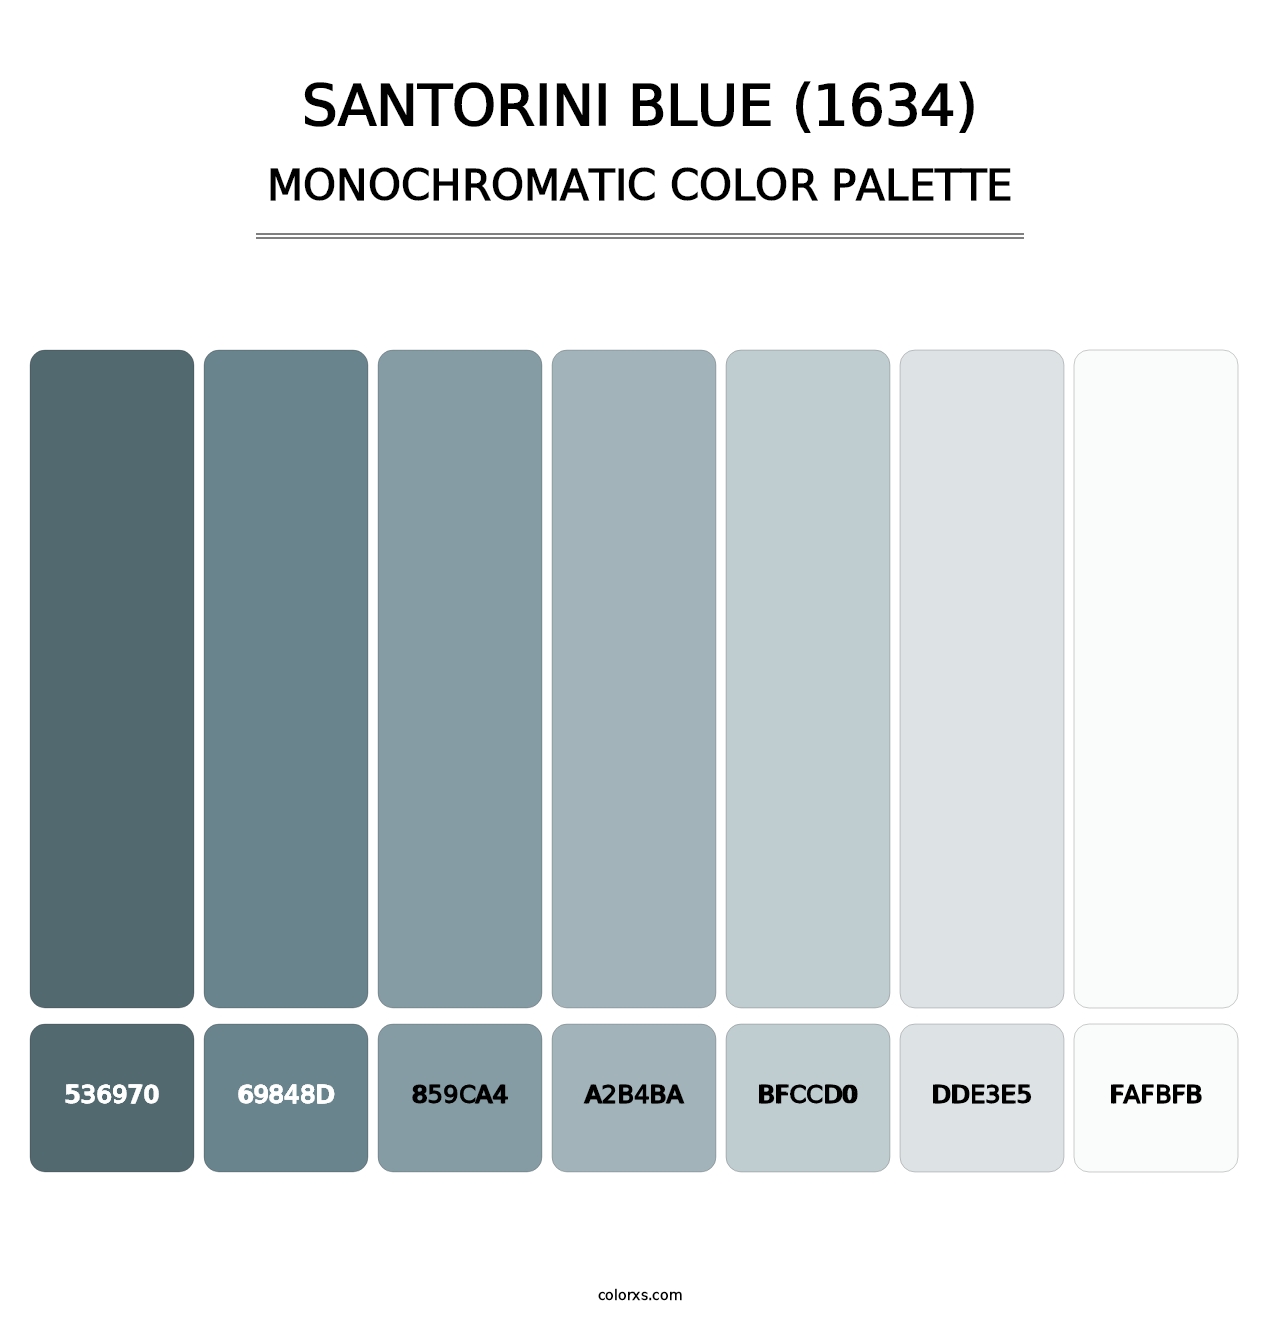 Santorini Blue (1634) - Monochromatic Color Palette